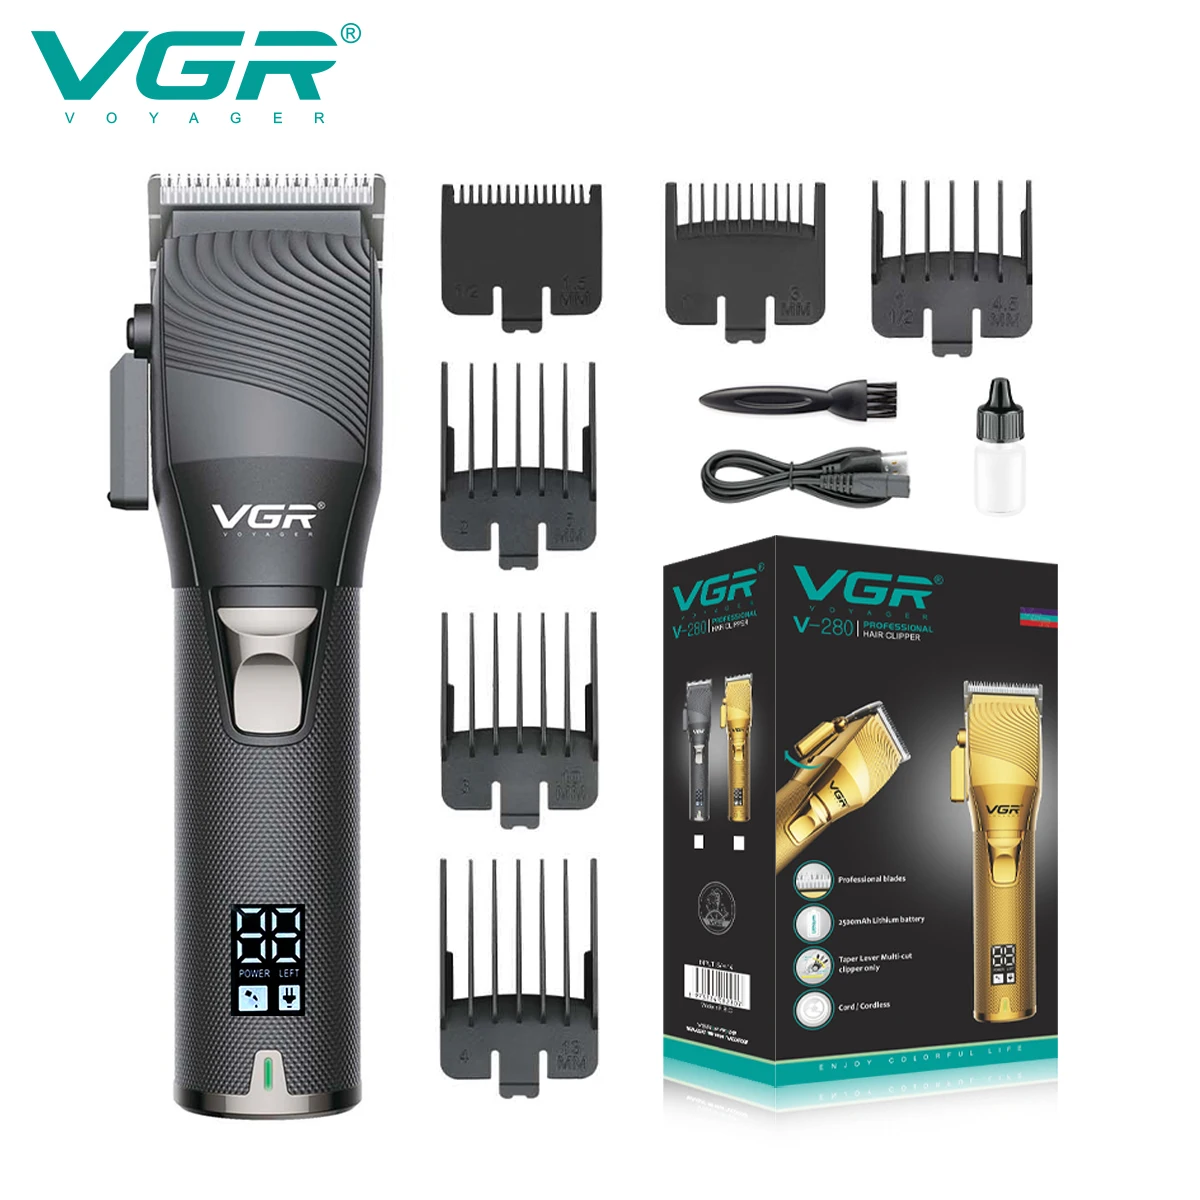 VGR Hair Trimmer Adjustable Hair Cutting Machine Professional Hair Clipper Cordless Haircut Machine Metal Trimmer for Men V-280